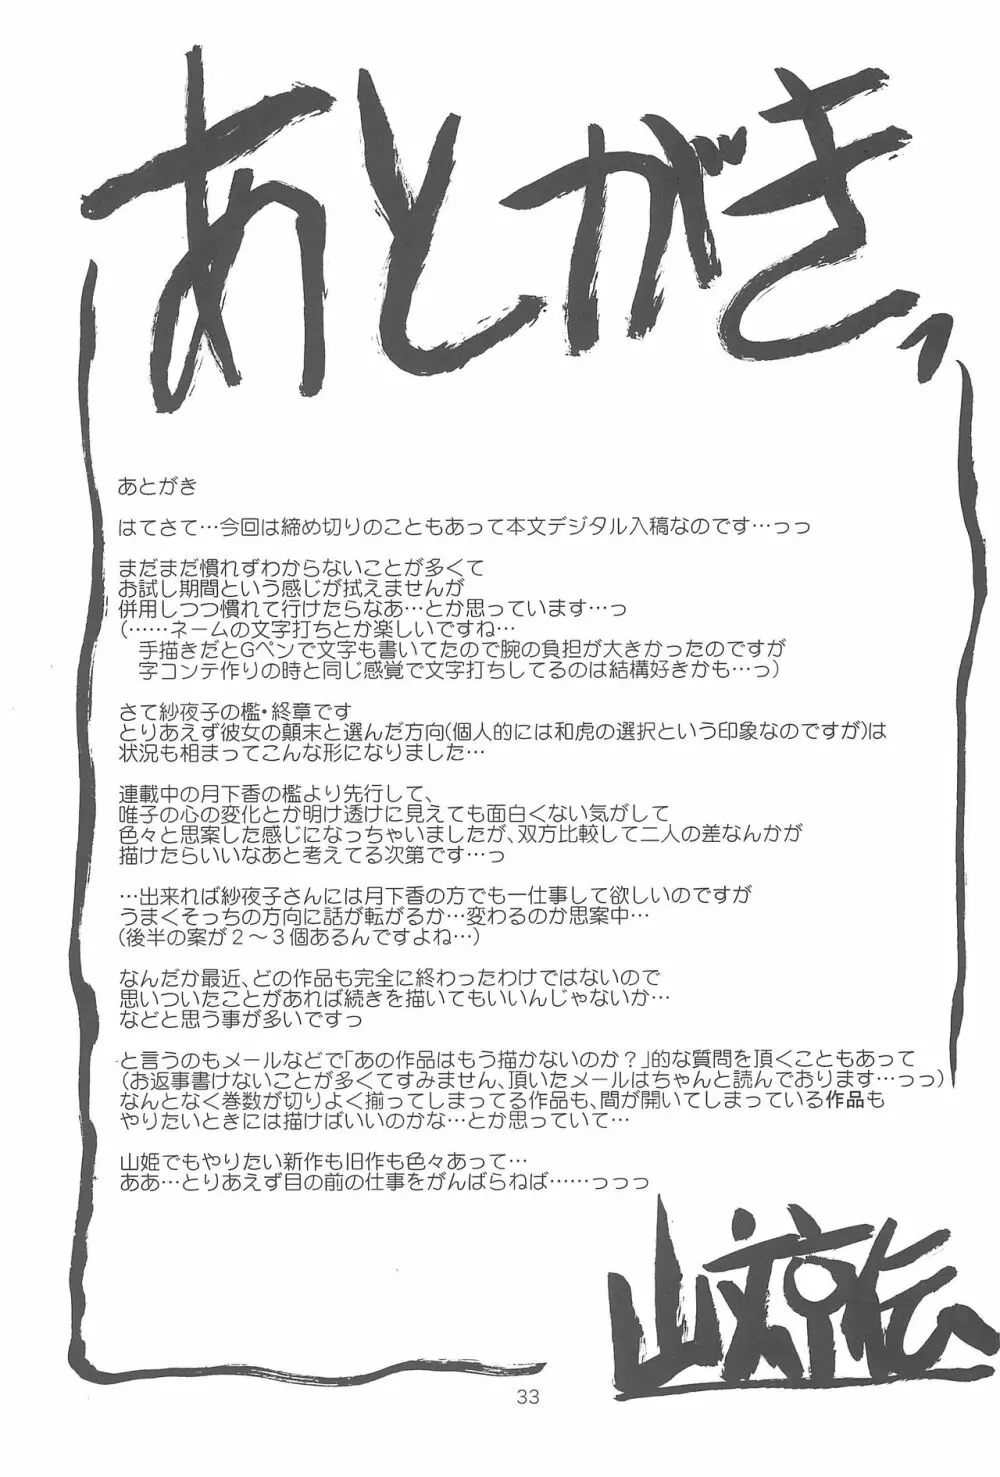 紗夜子の檻 -山影抄 紗夜子3- 33ページ